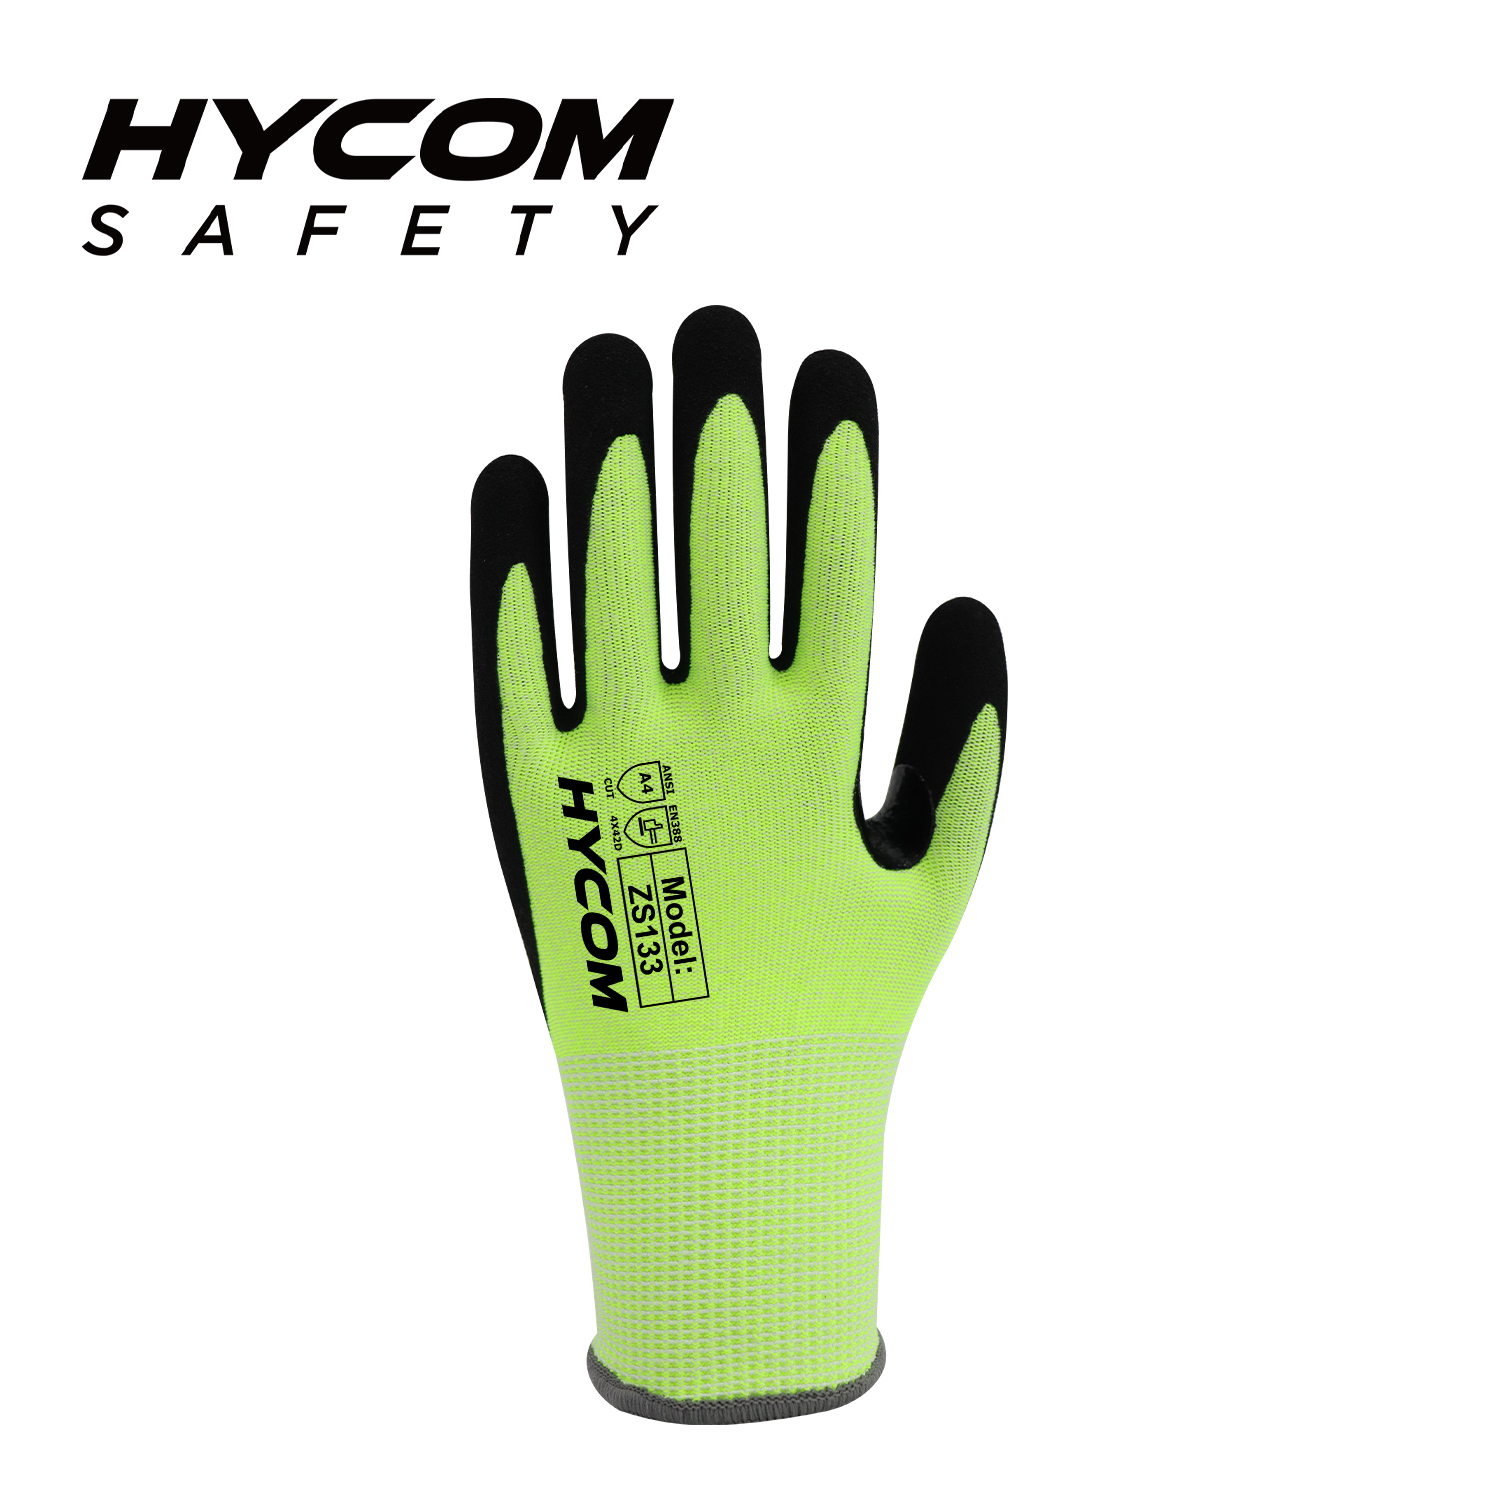 HYCOM 13G ANSI 4, kein Stahl, kein Glas, schnittfester Handschuh mit Schaumstoff-Nitril-Beschichtung, verstärkte Arbeitshandschuhe im Daumenbereich